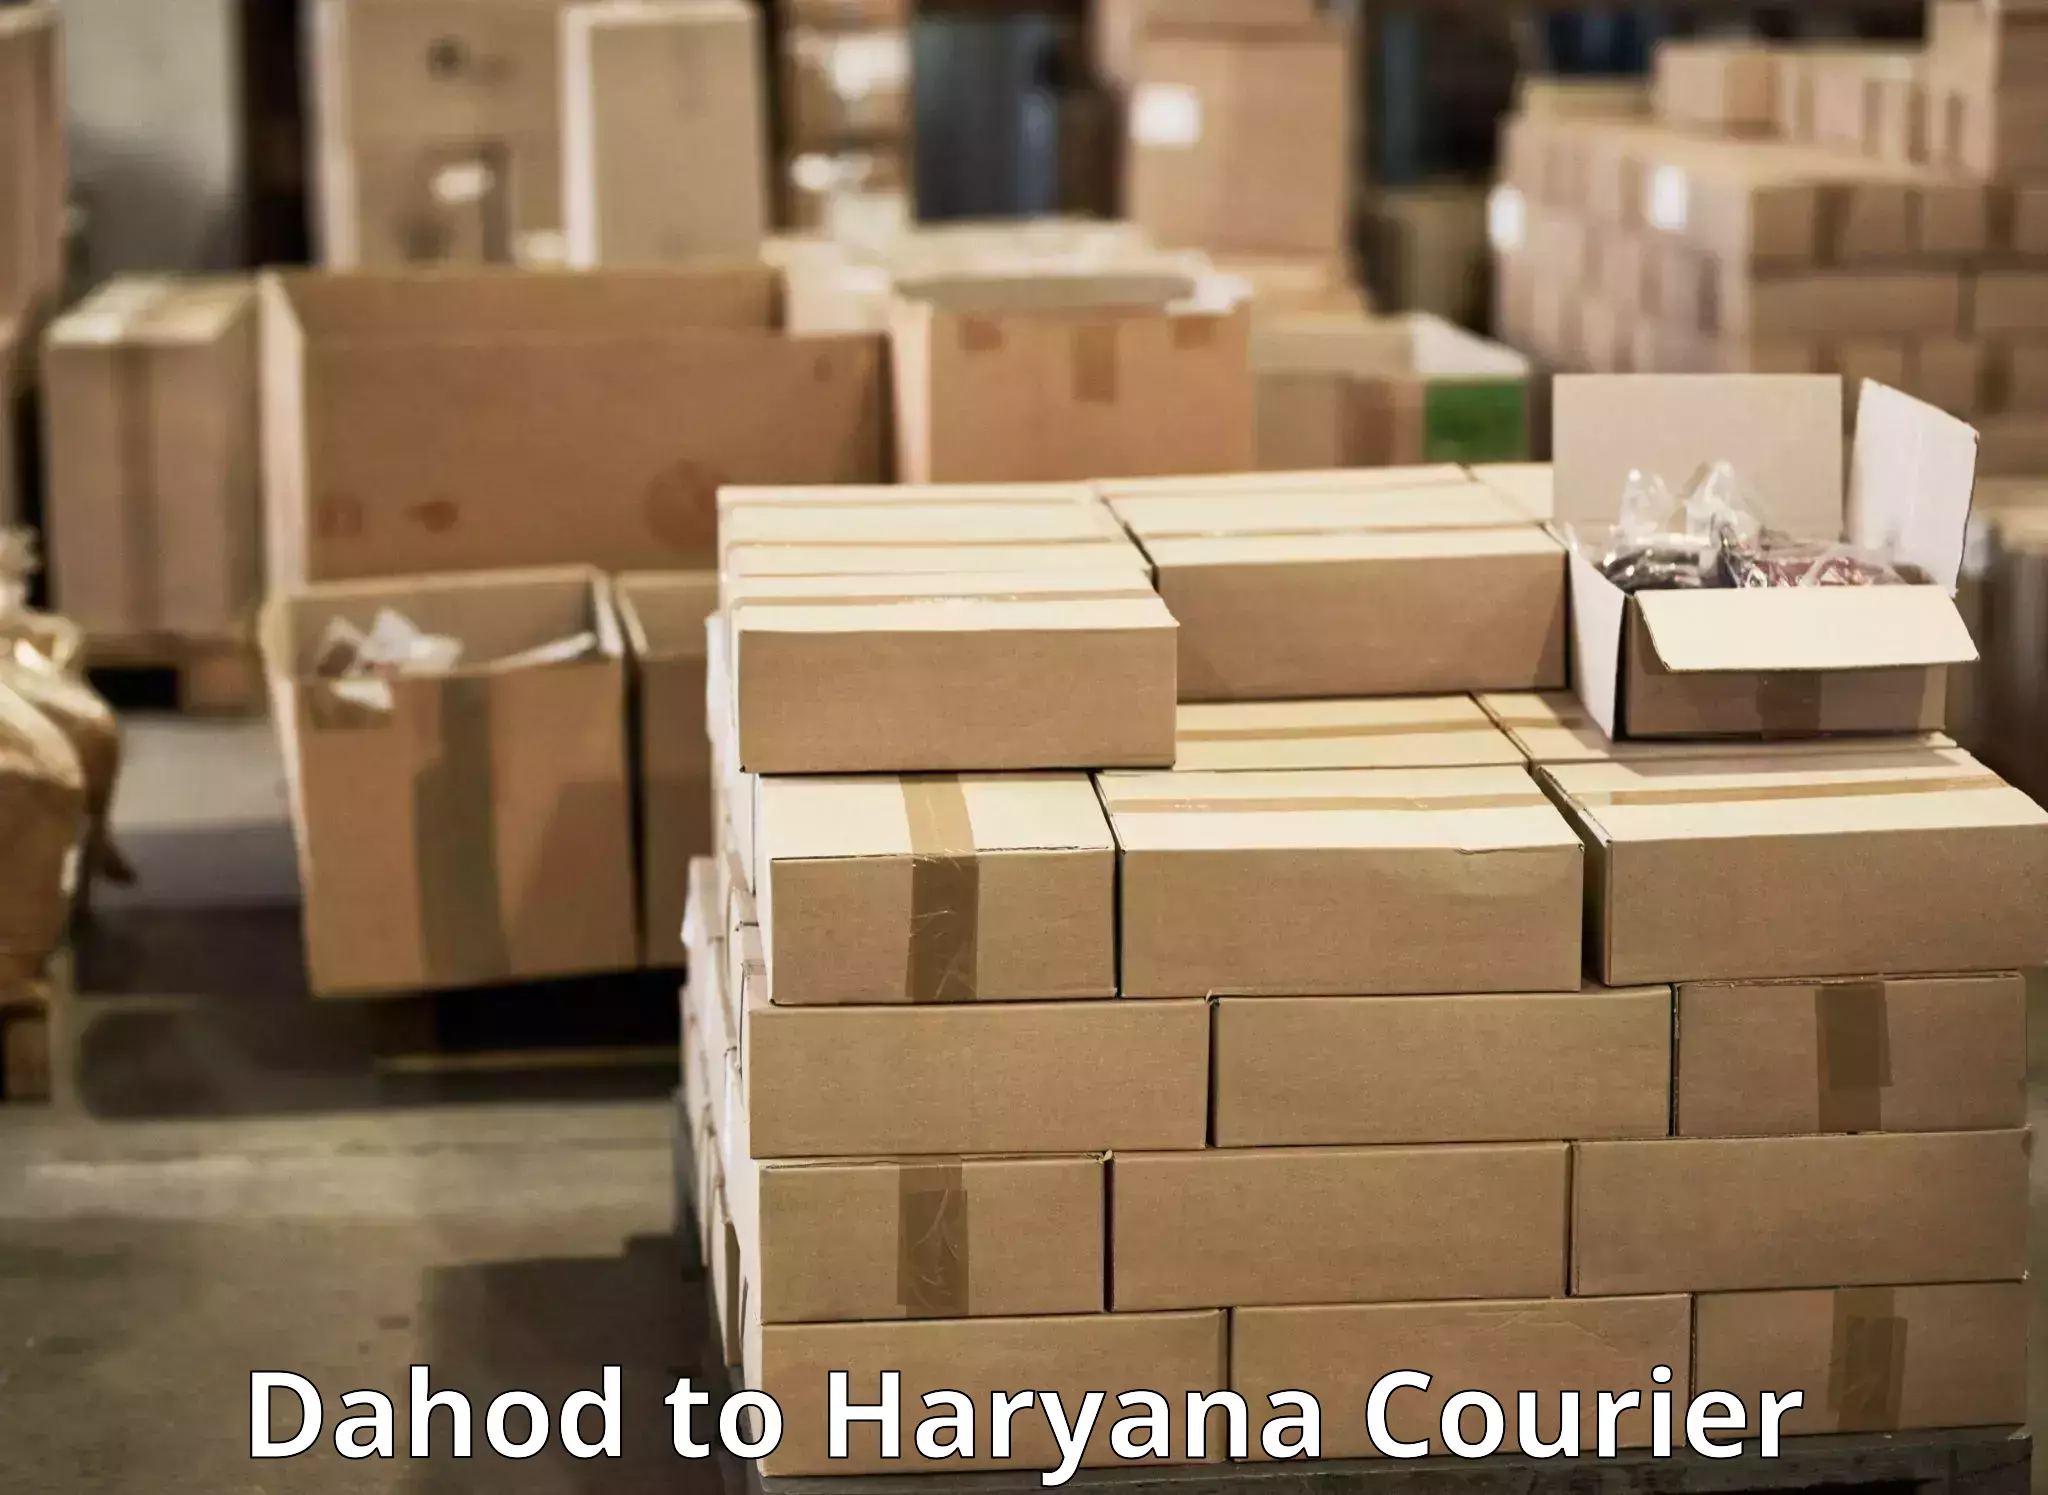 Professional parcel services Dahod to IIIT Sonepat